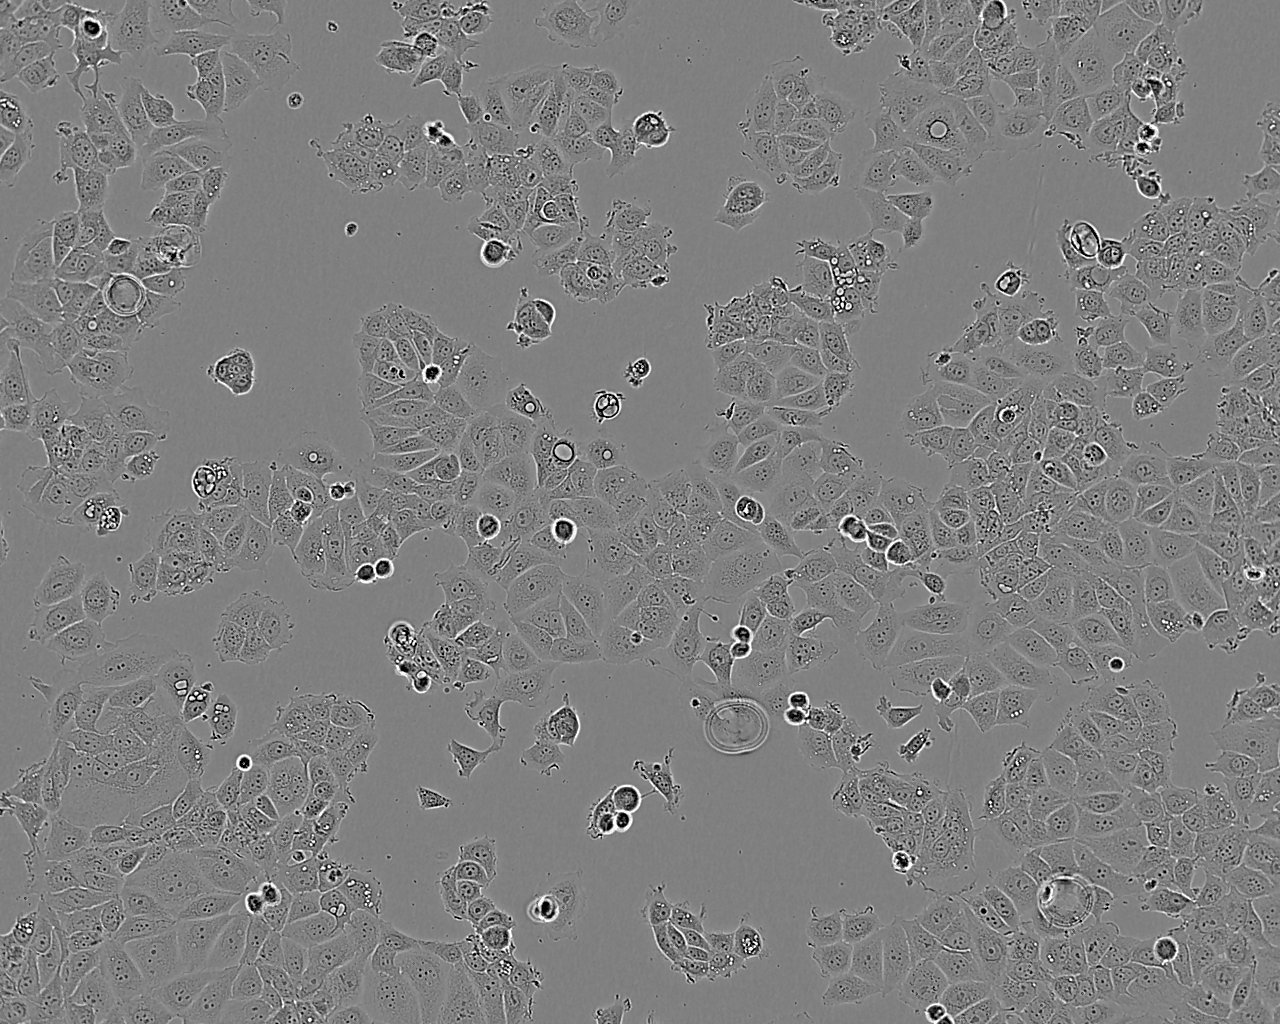 G-402 Cells|人肾平滑肌瘤细胞系